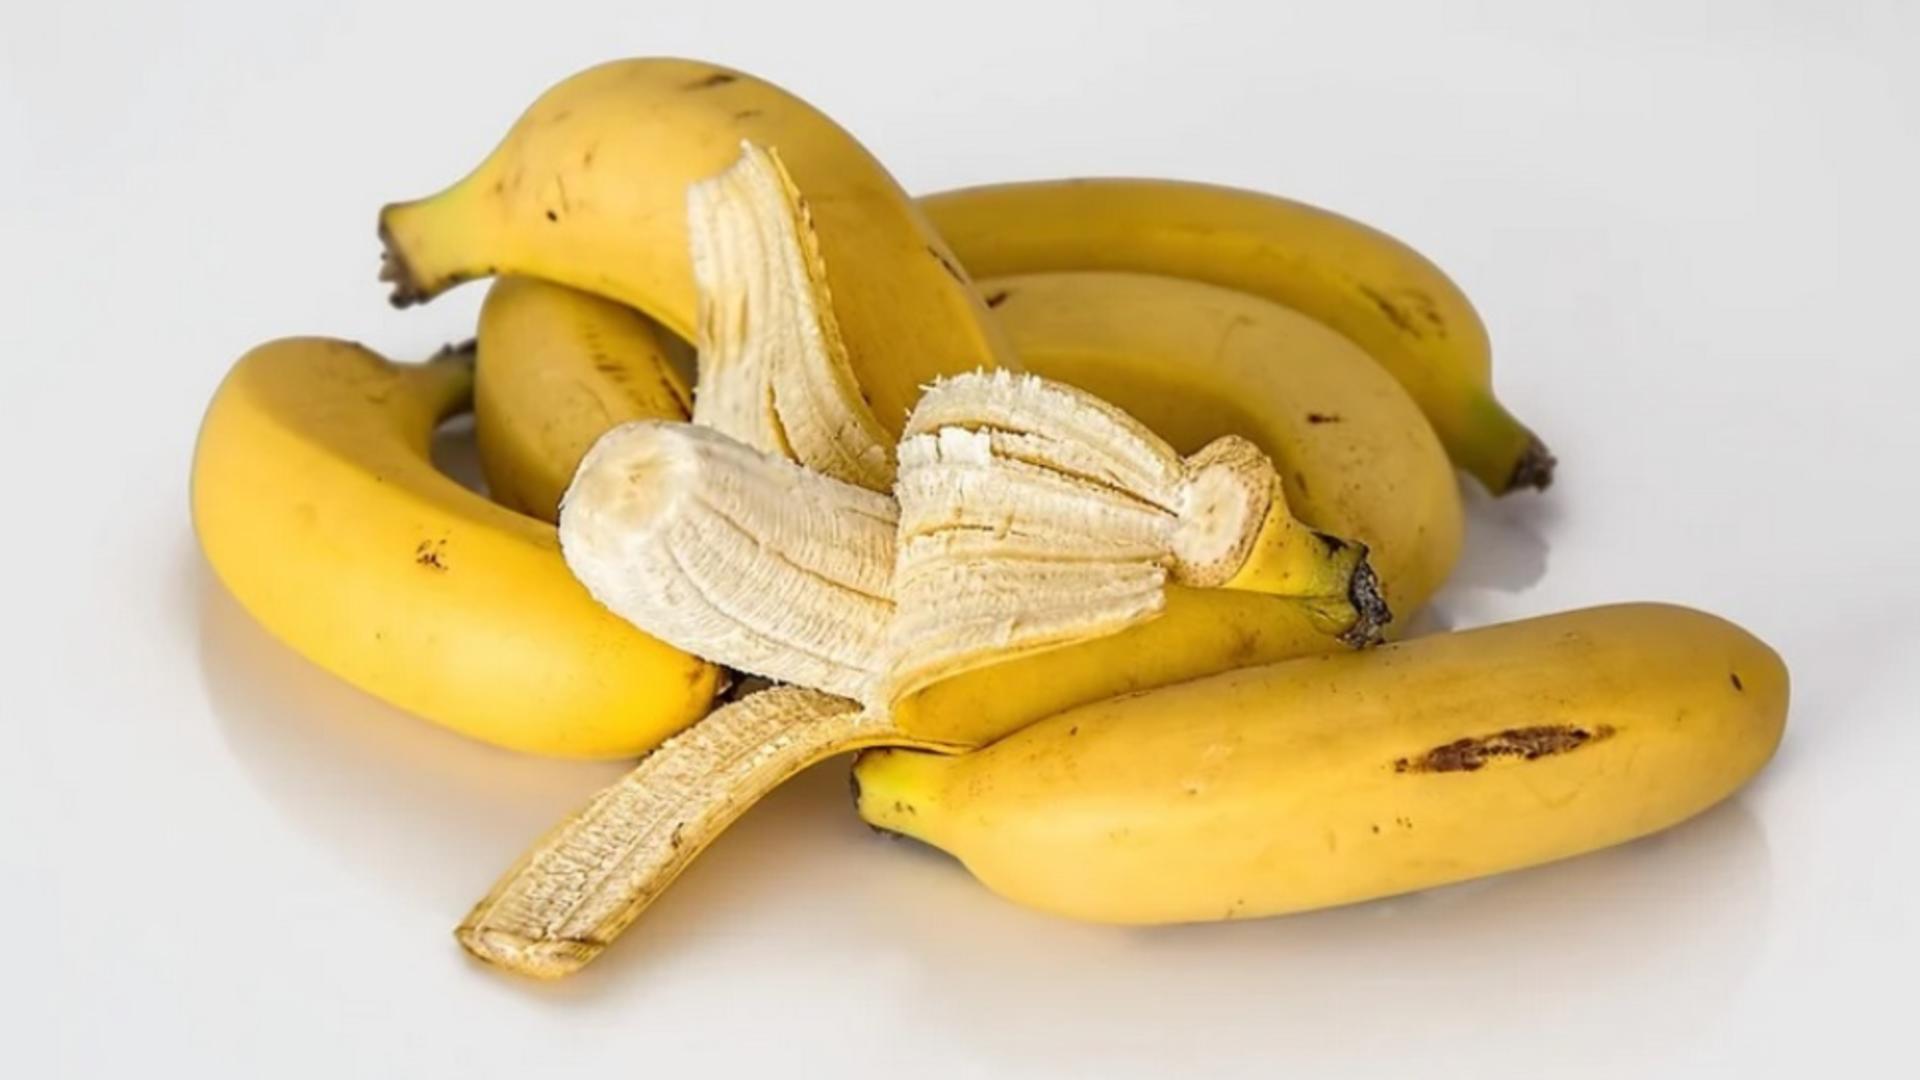 Tu mănânci vârful de la banană? Uite la ce riscuri te expui